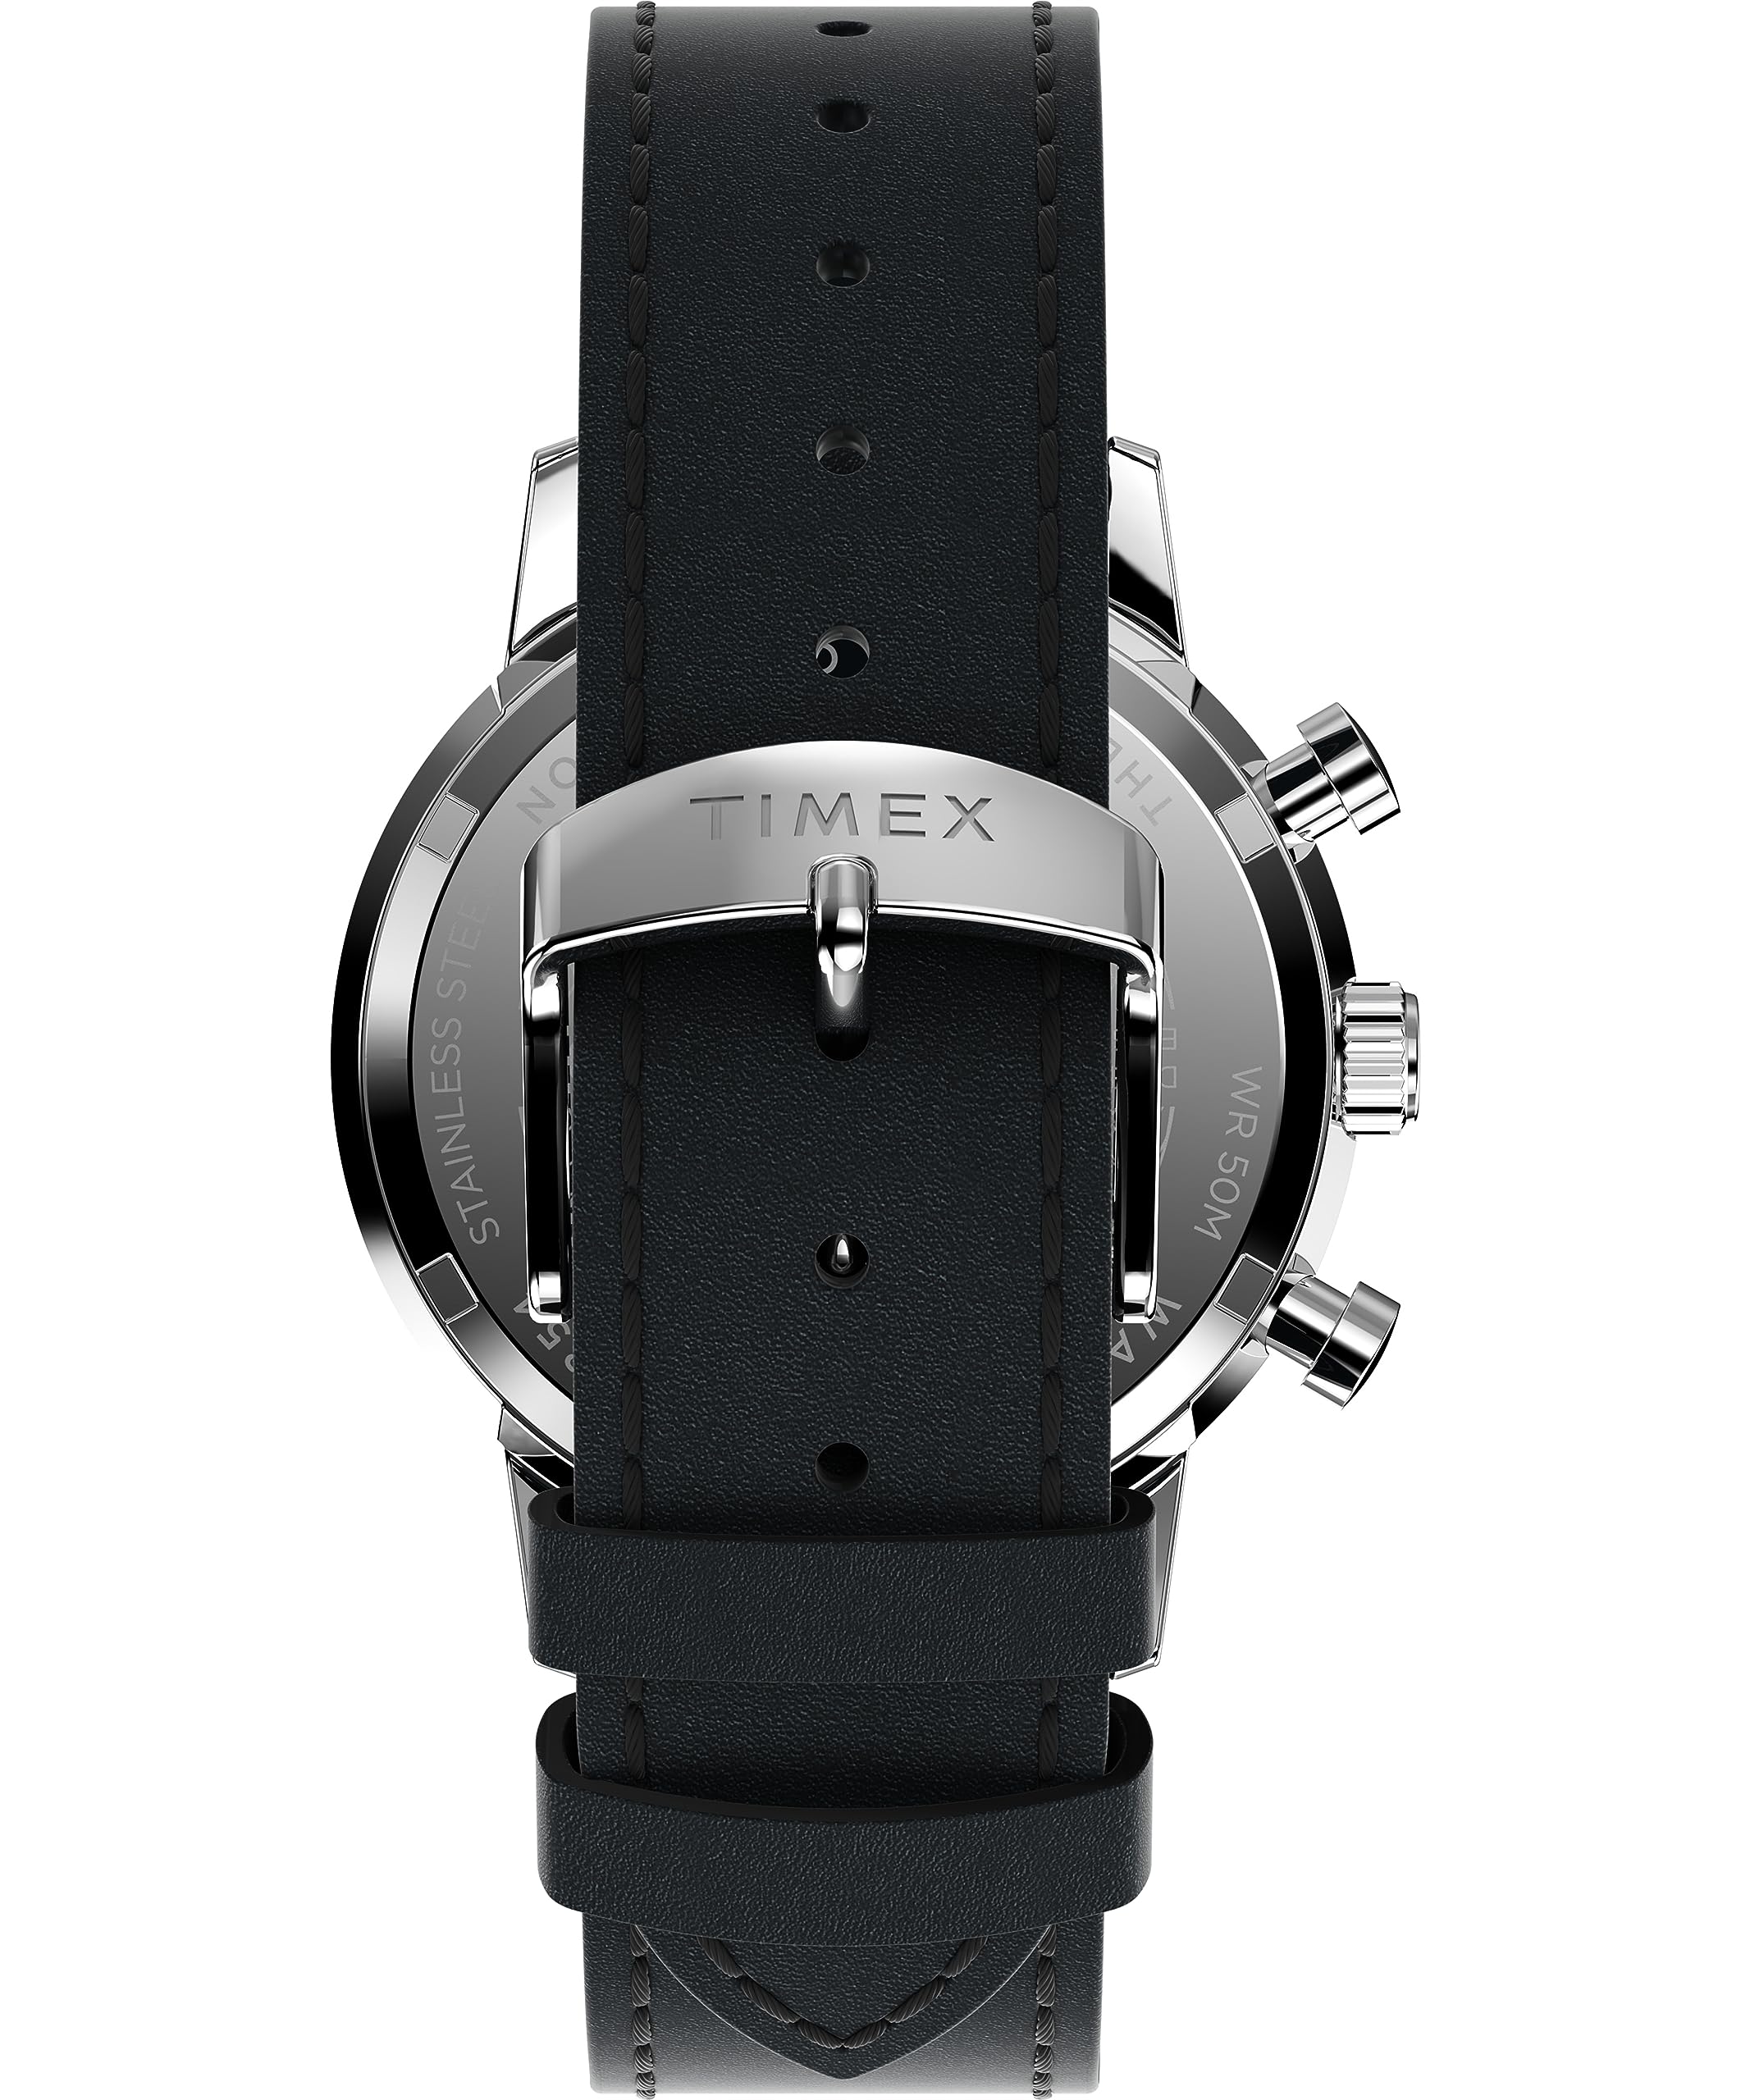 Timex 40 mm Marlin Chronograph Watch